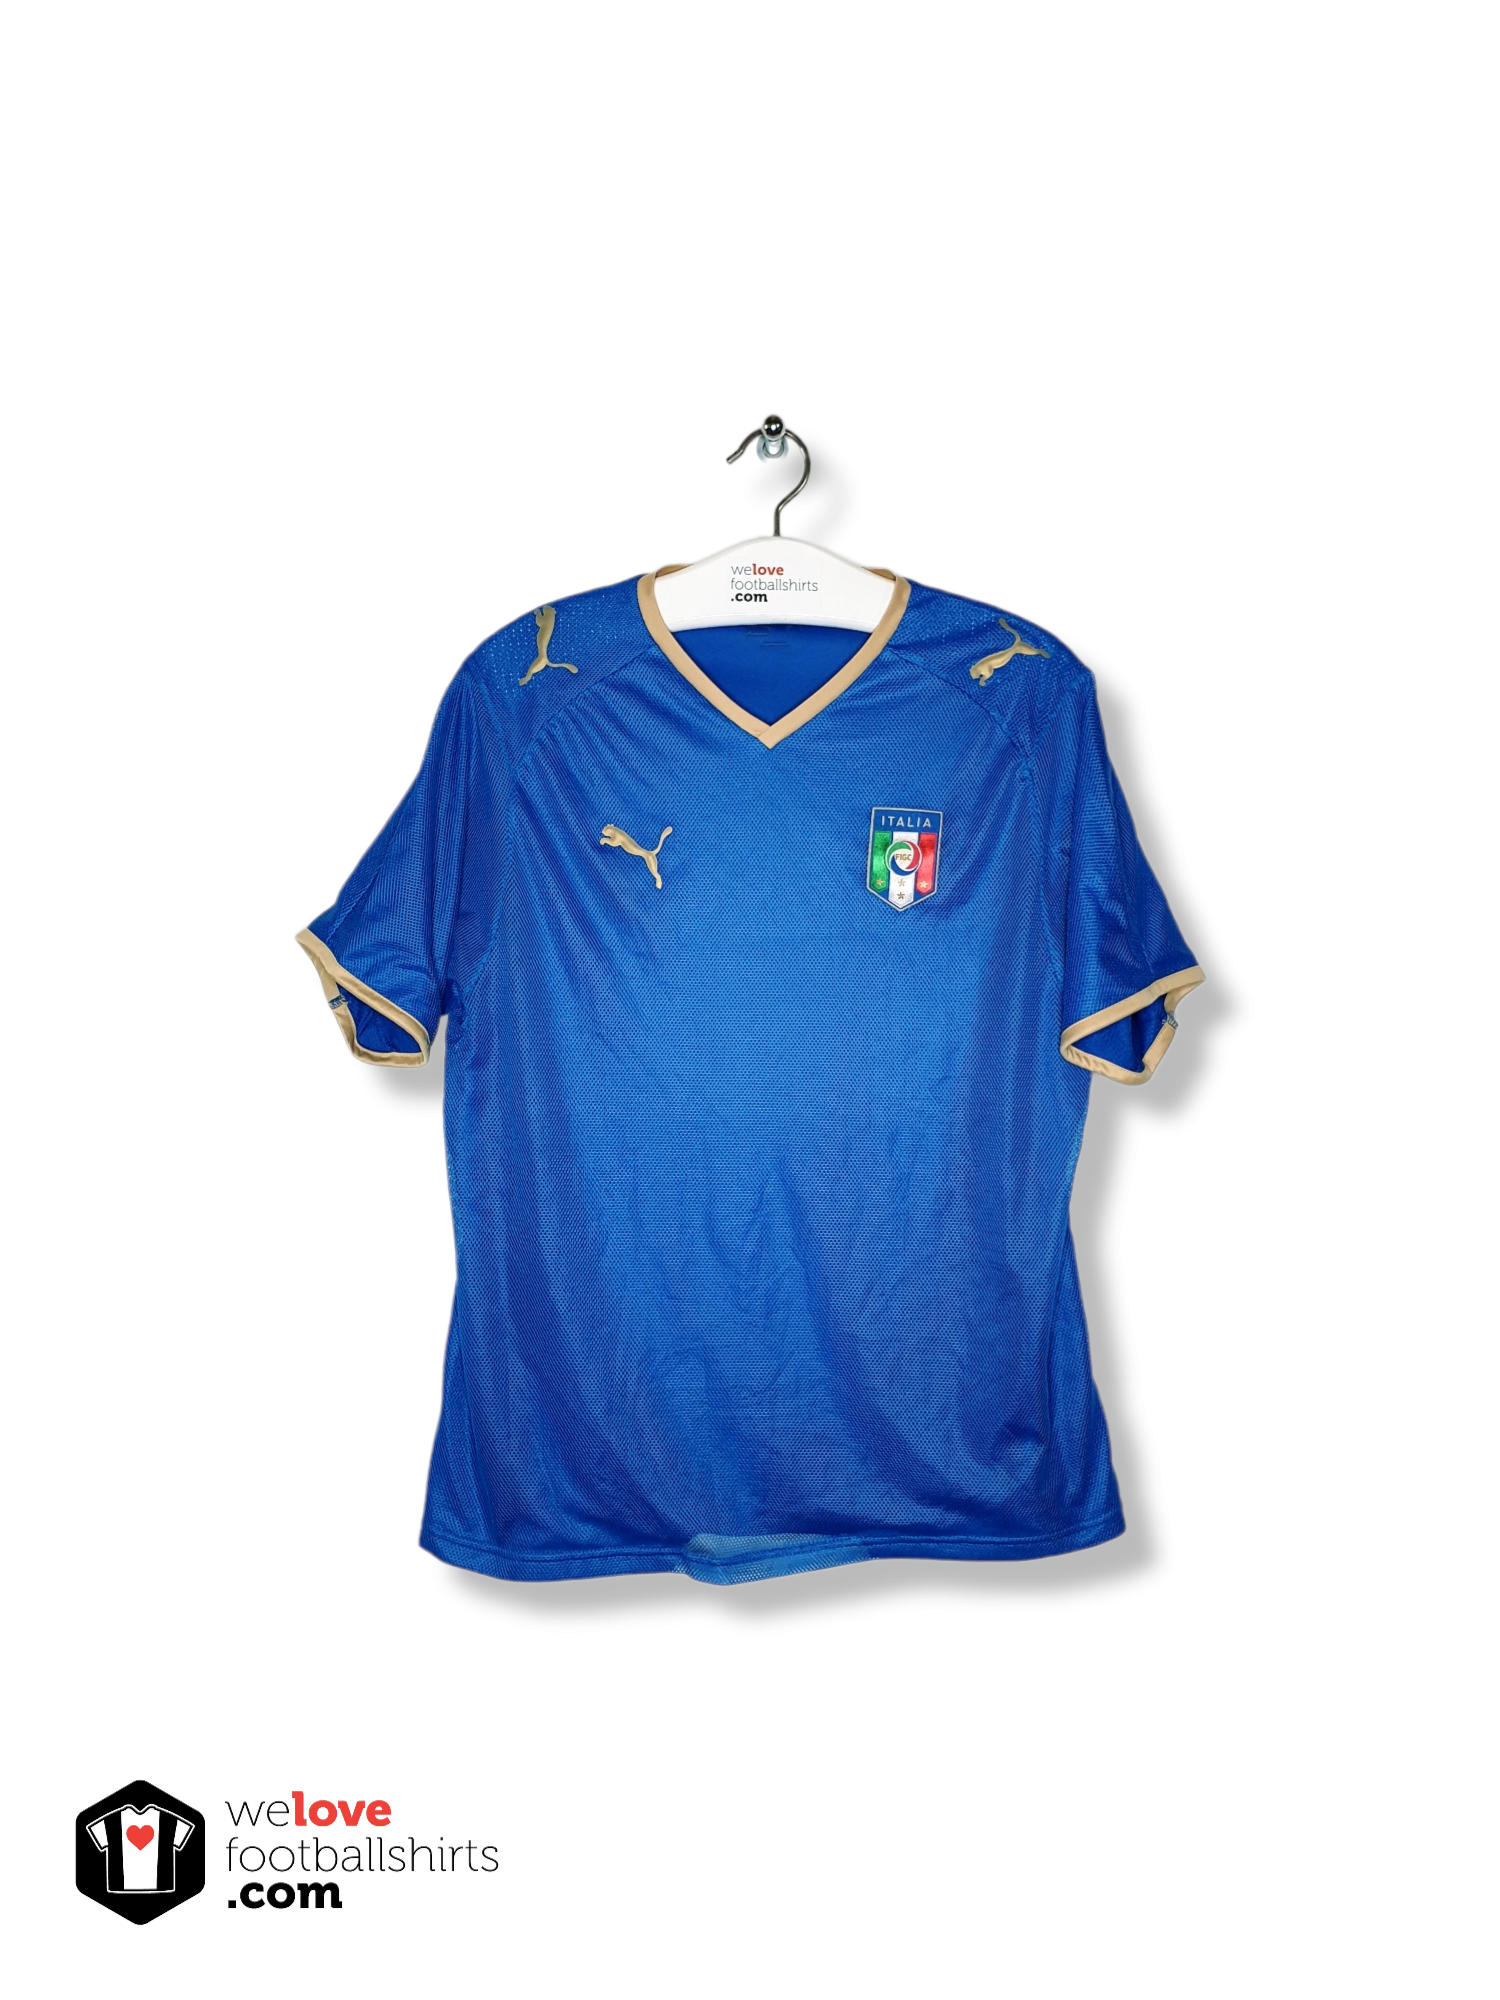 Doorzichtig hypotheek Dekking Puma voetbalshirt Italië 2007/08 - Welovefootballshirts.com